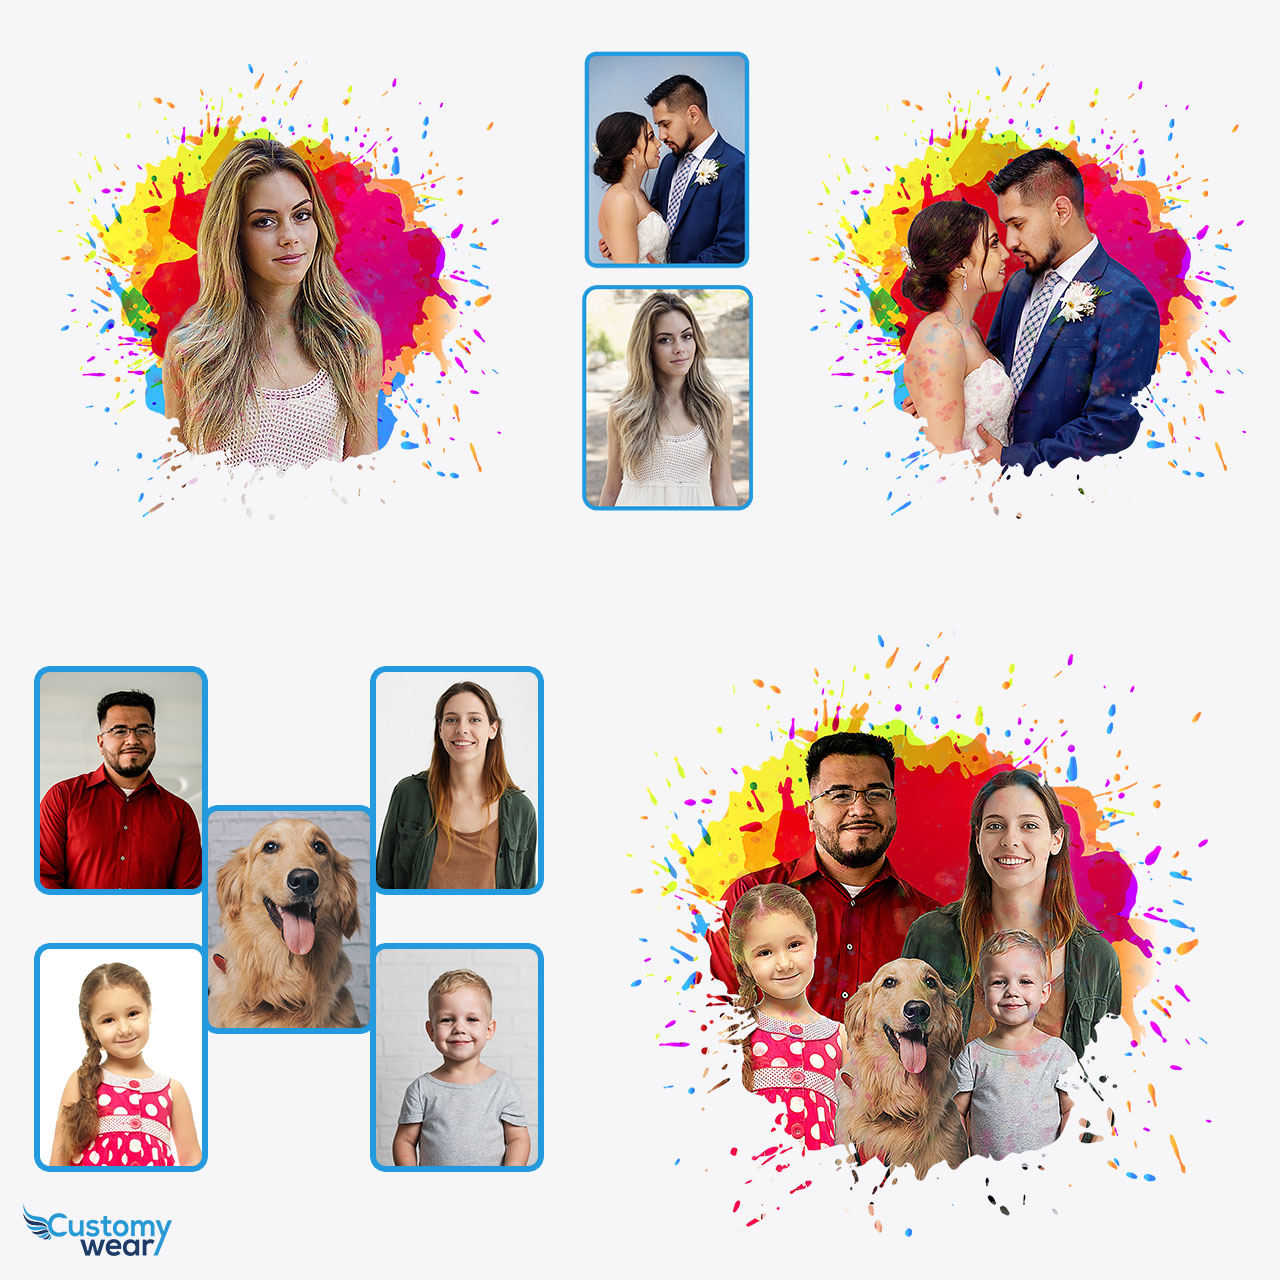 Cattura ricordi insieme con poster personalizzati con immagini per coppie -  Idea regalo ideale - Customywear